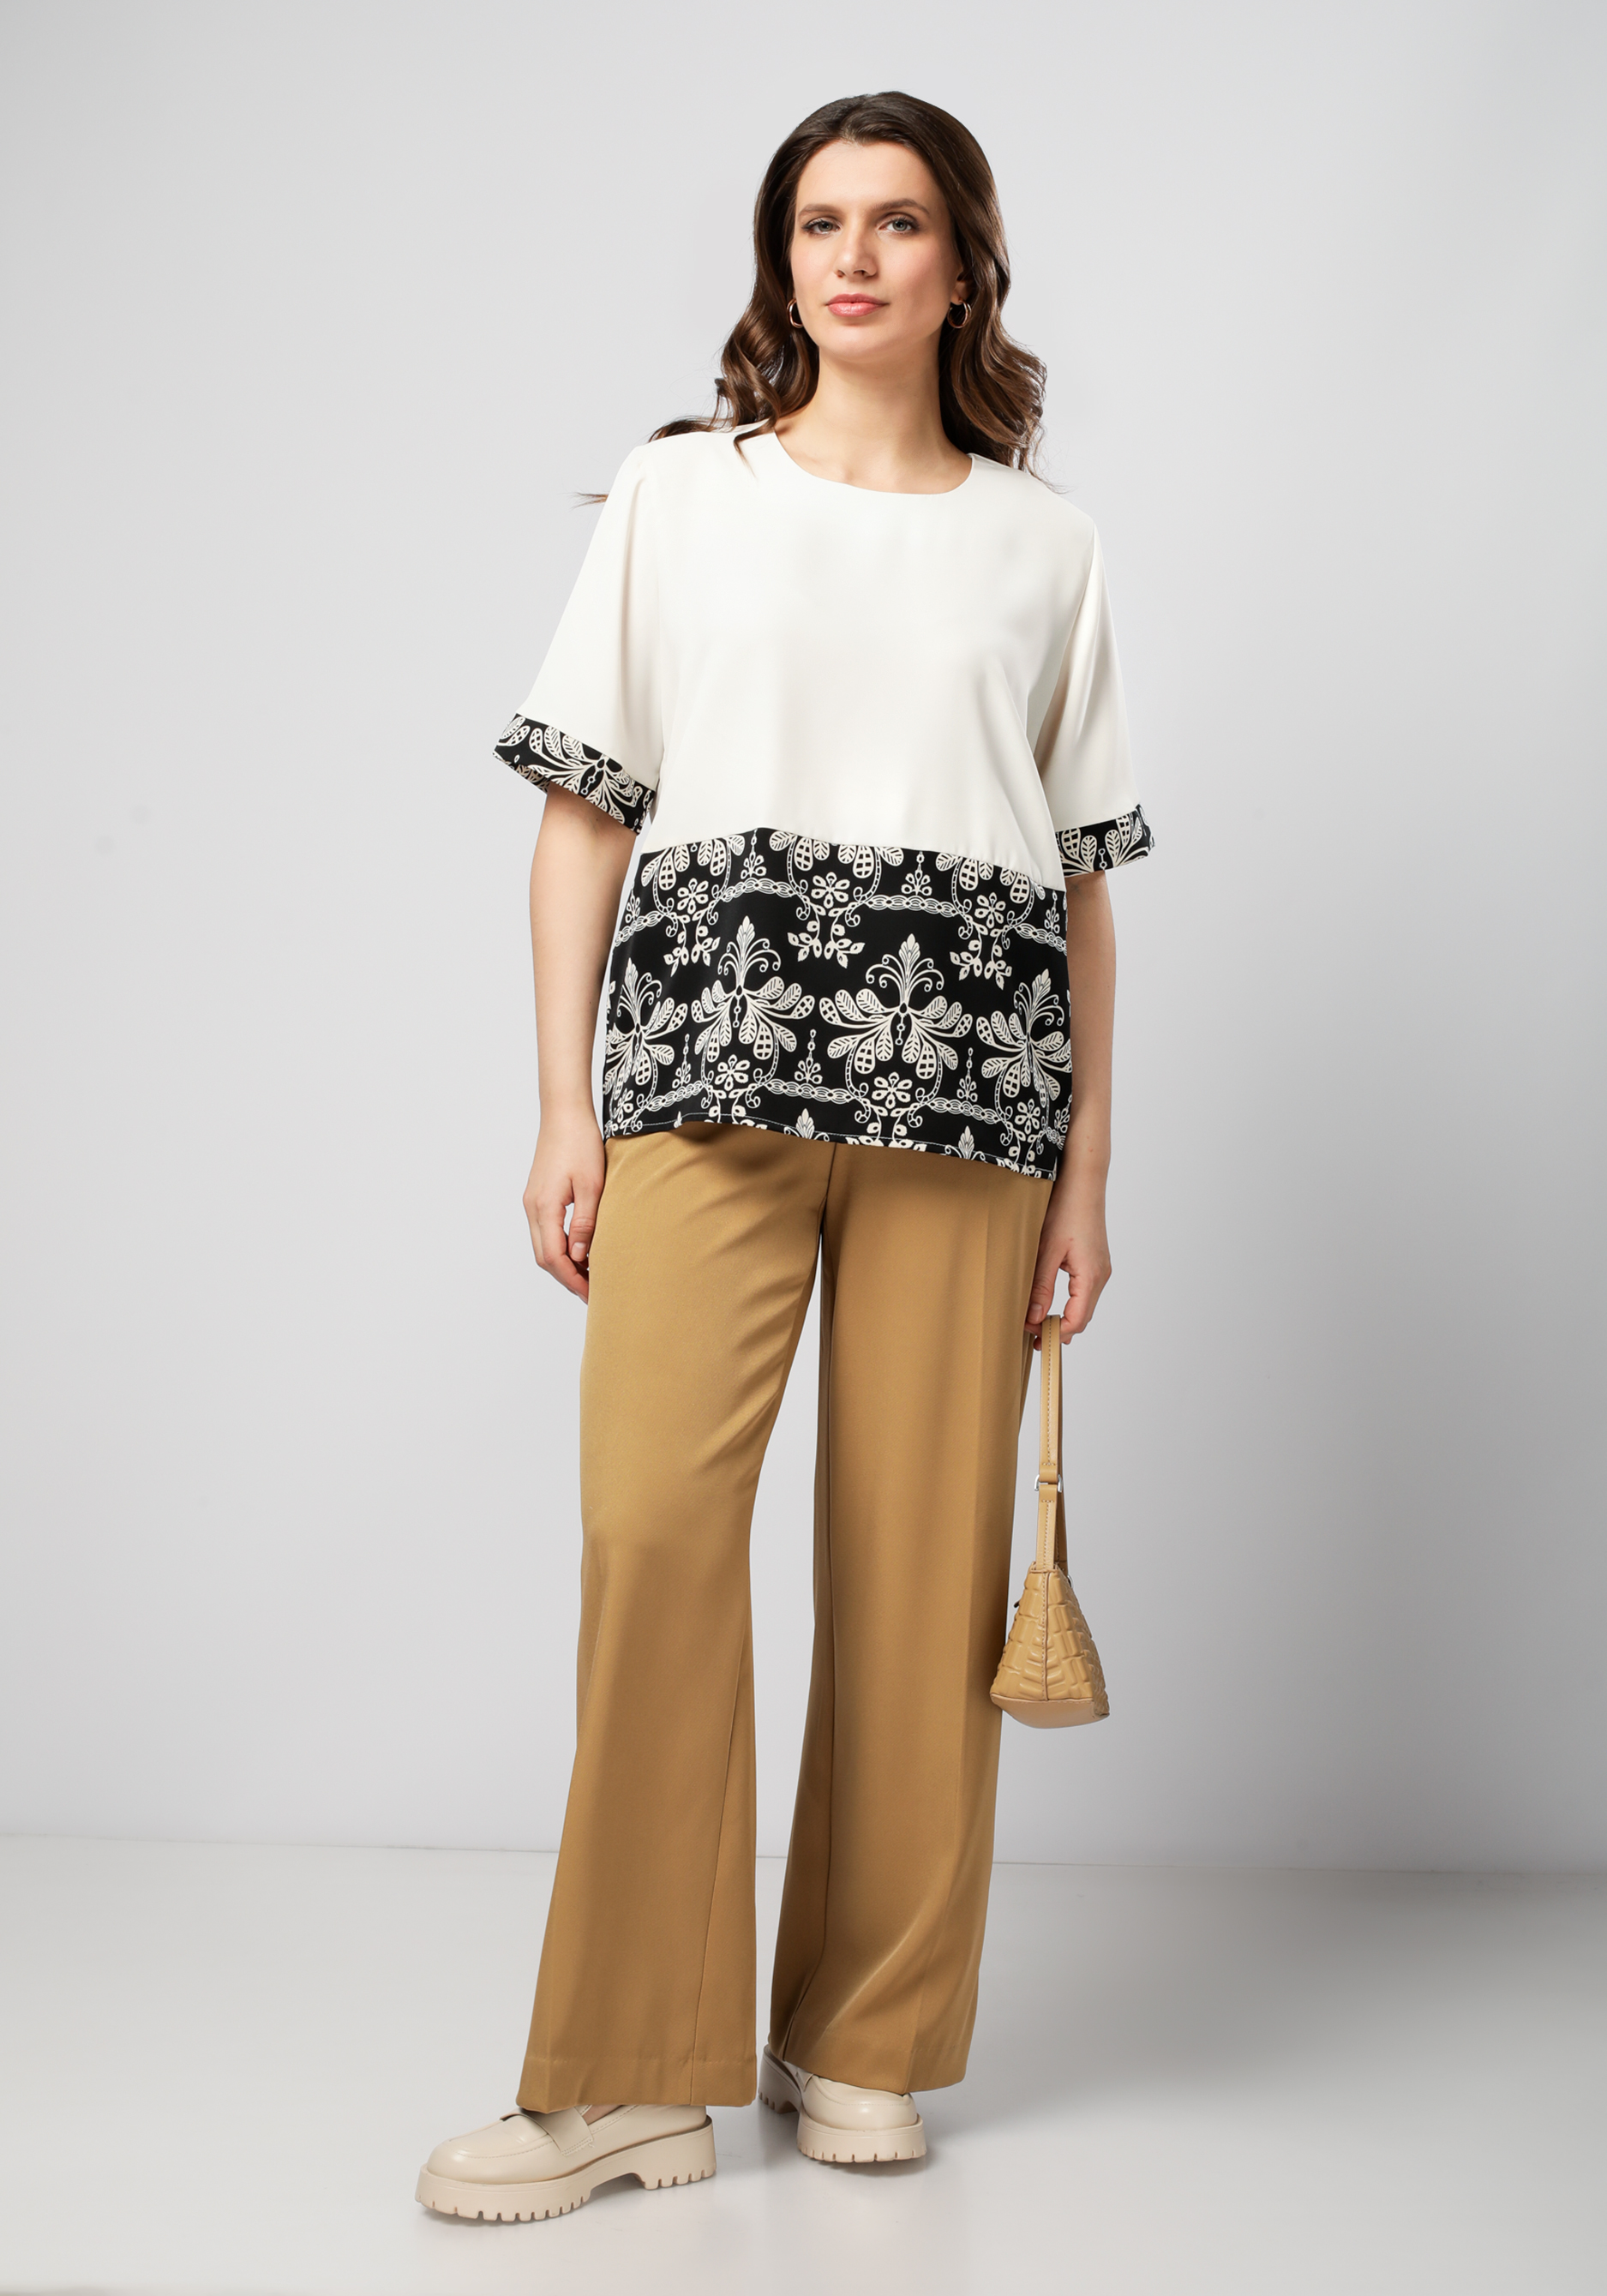 Блуза из комбинированной ткани с узором Bianka Modeno, цвет белый, размер 56 - фото 2